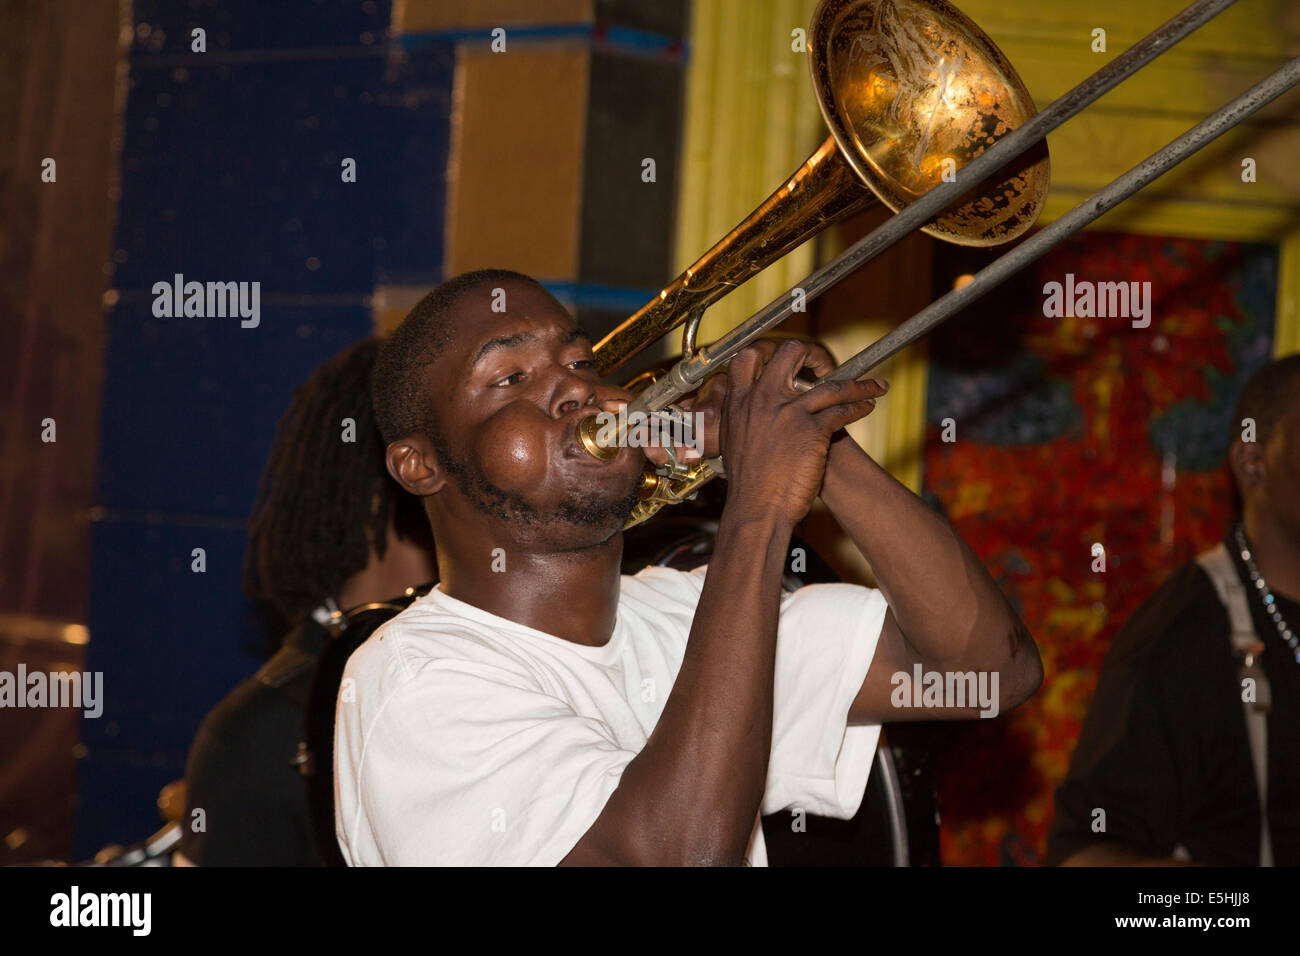 Straßenmusiker spielen Posaune, New Orleans, Louisiana, Vereinigte Staaten von Amerika Stockfoto